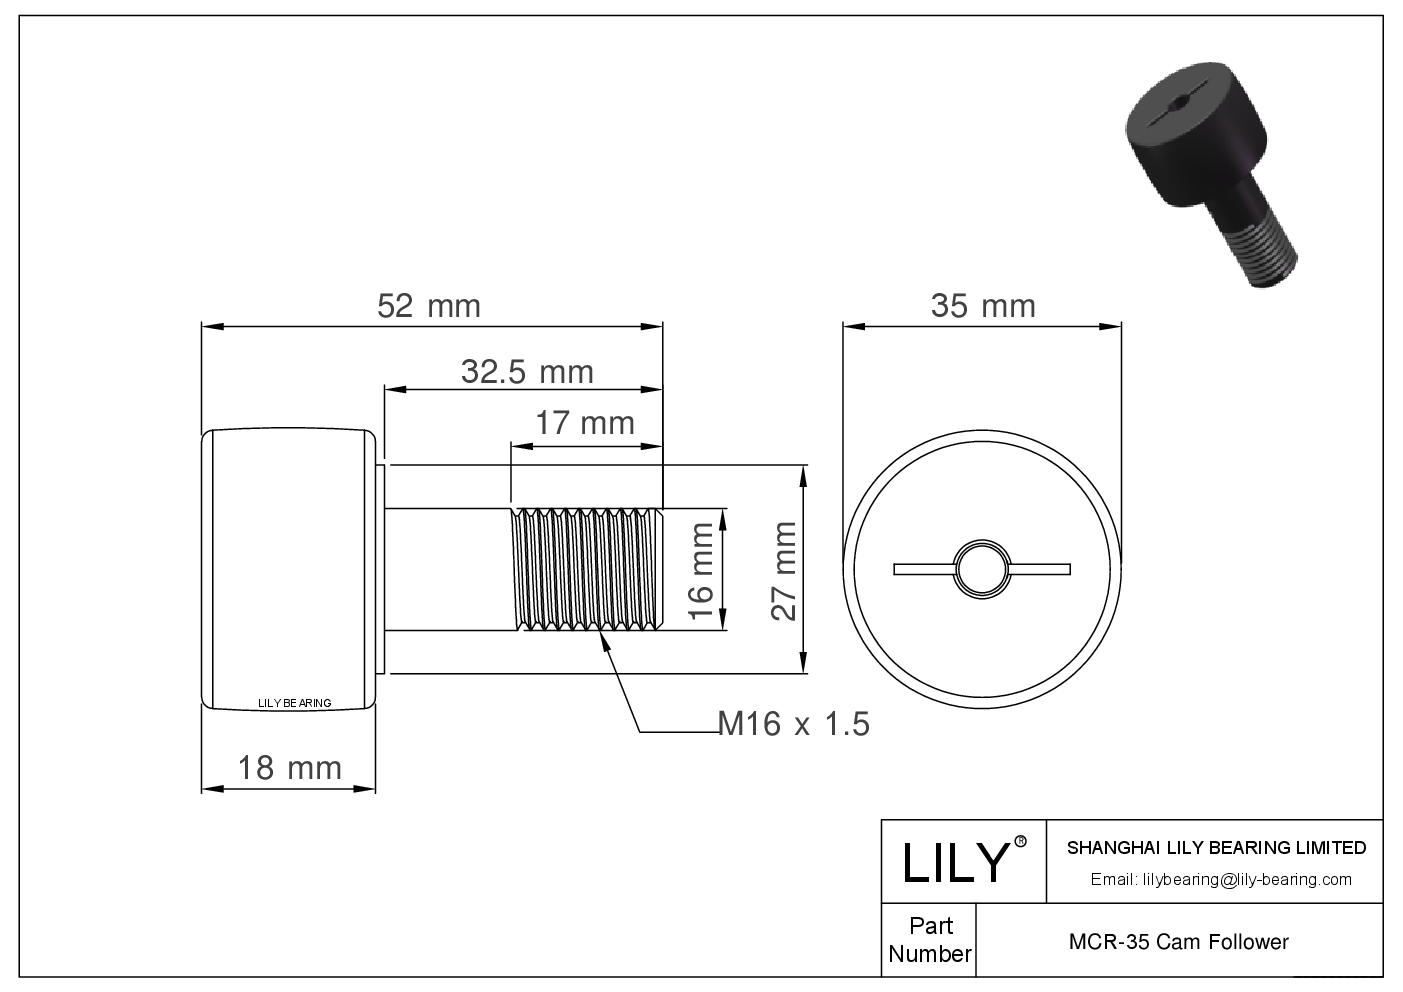 MCR-35 Stud Style Metric Cam Followers CAD图形